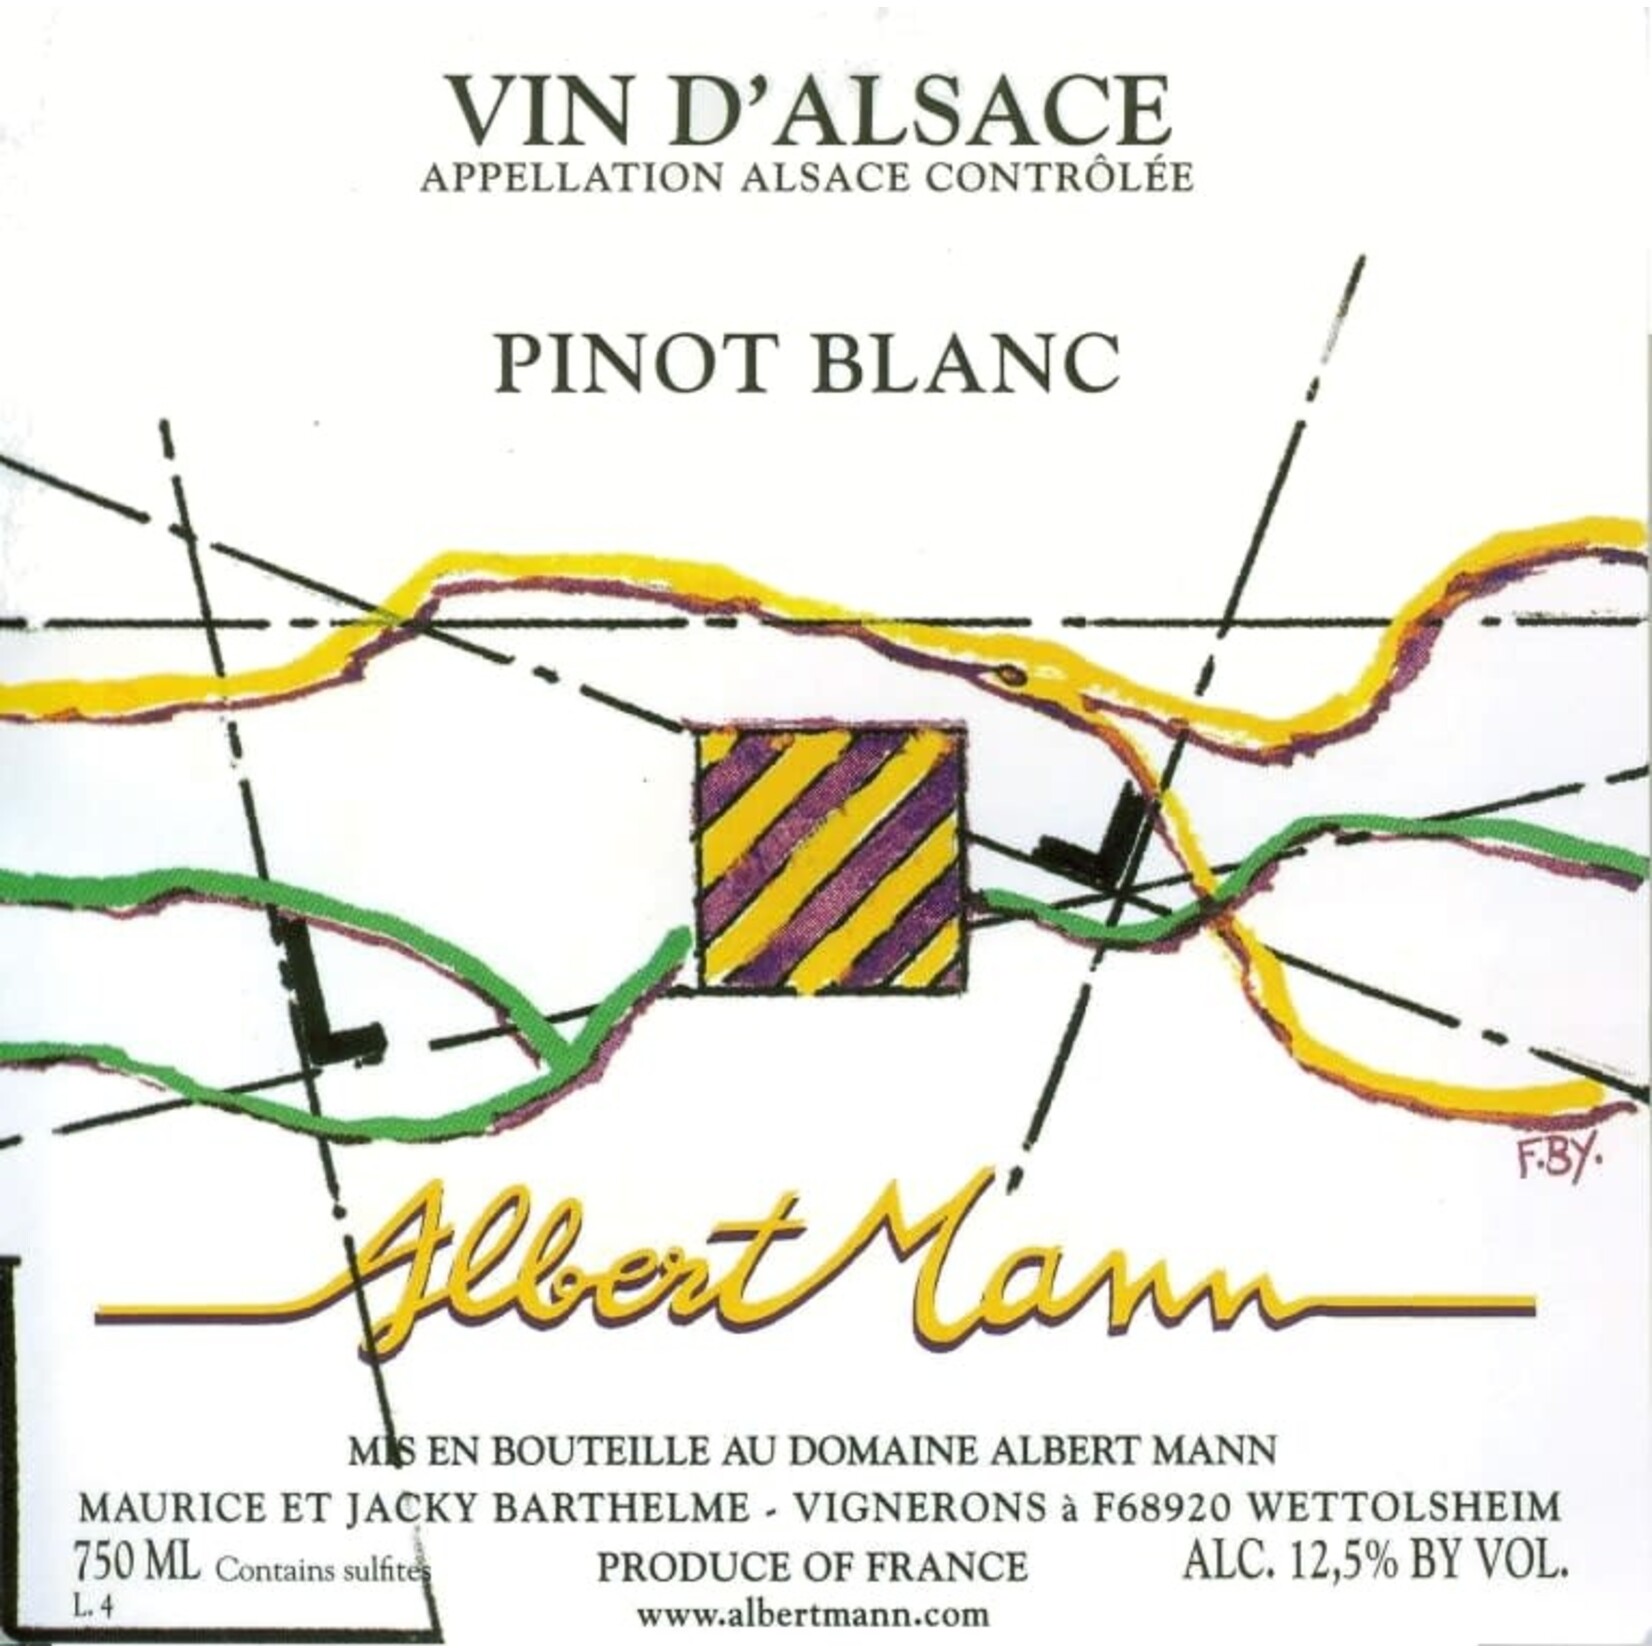 Albert Mann Albert Mann Pinot Blanc Auxerrois 2021 Alsace, France